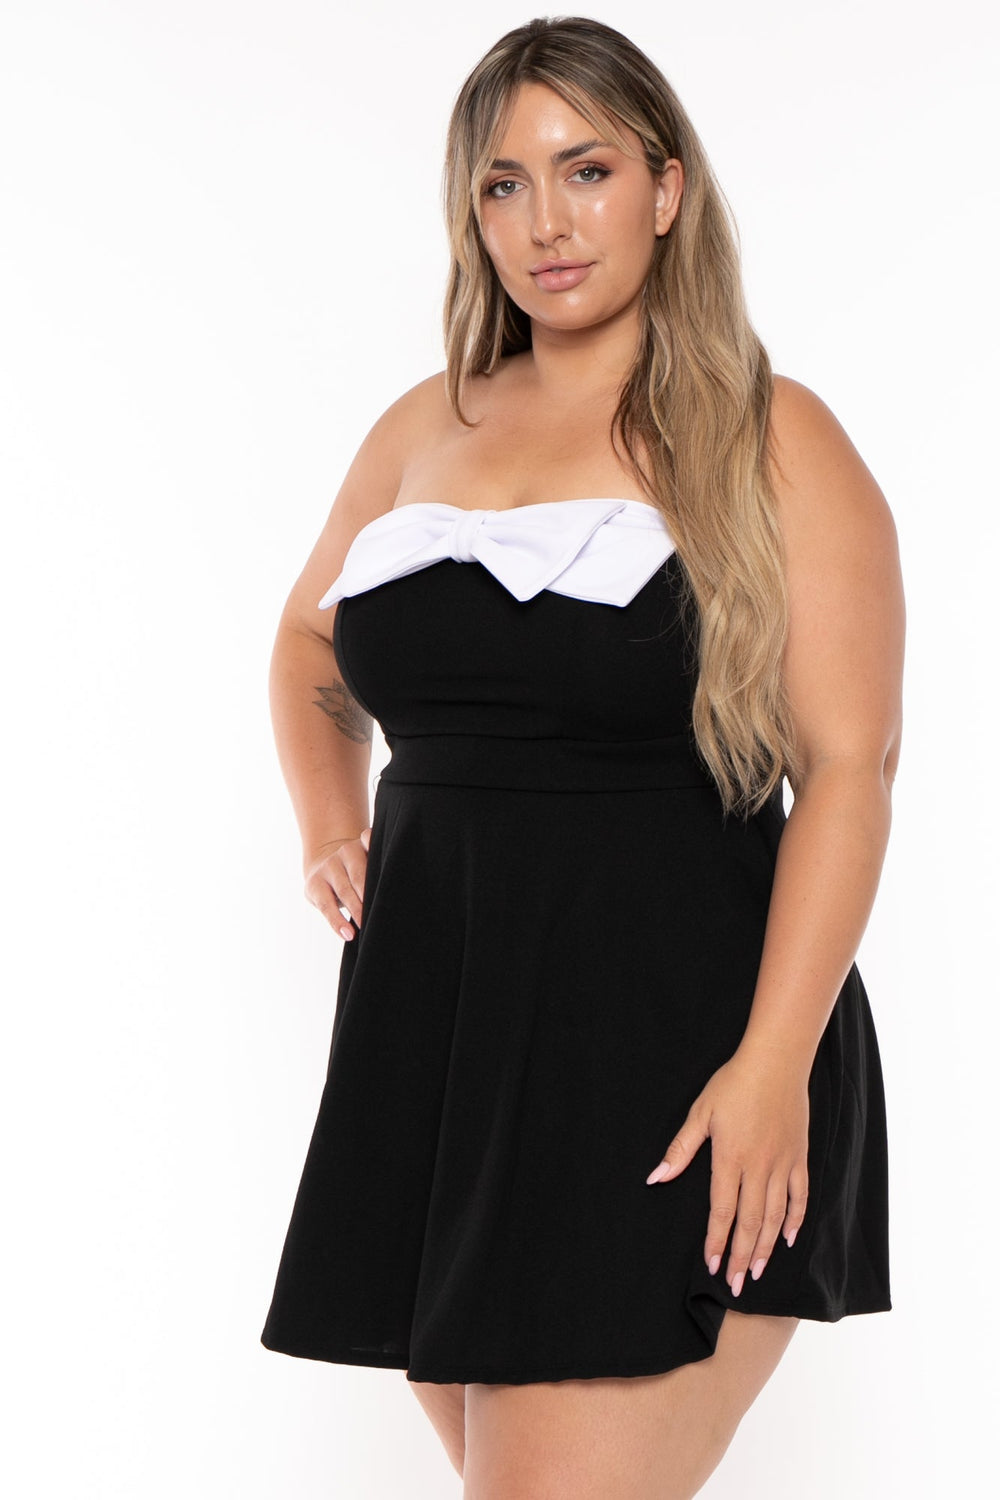 Curvy Sense Dresses Plus Size Bellamy Mini Flare Dress - Black